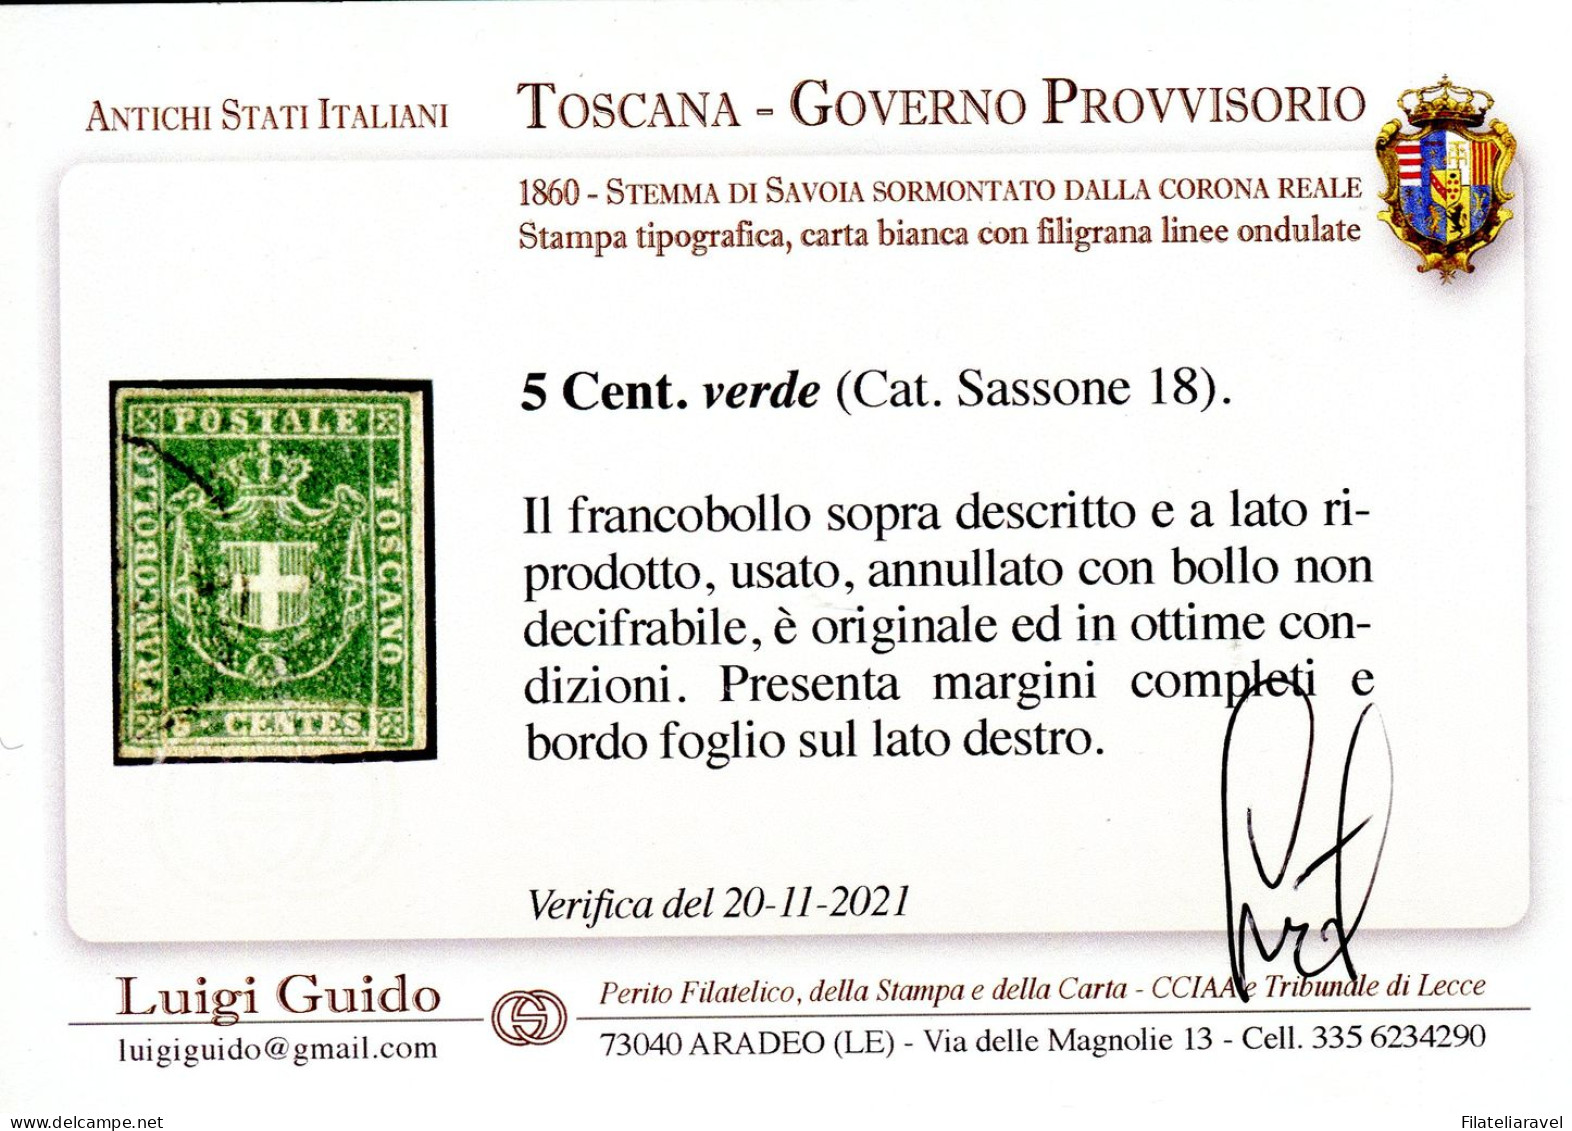 Us 1857 "Toscana Governo Provvisorio" C.5 Verde (18) Perfetto Bordo Foglio. Ver. L Guido - Tuscany